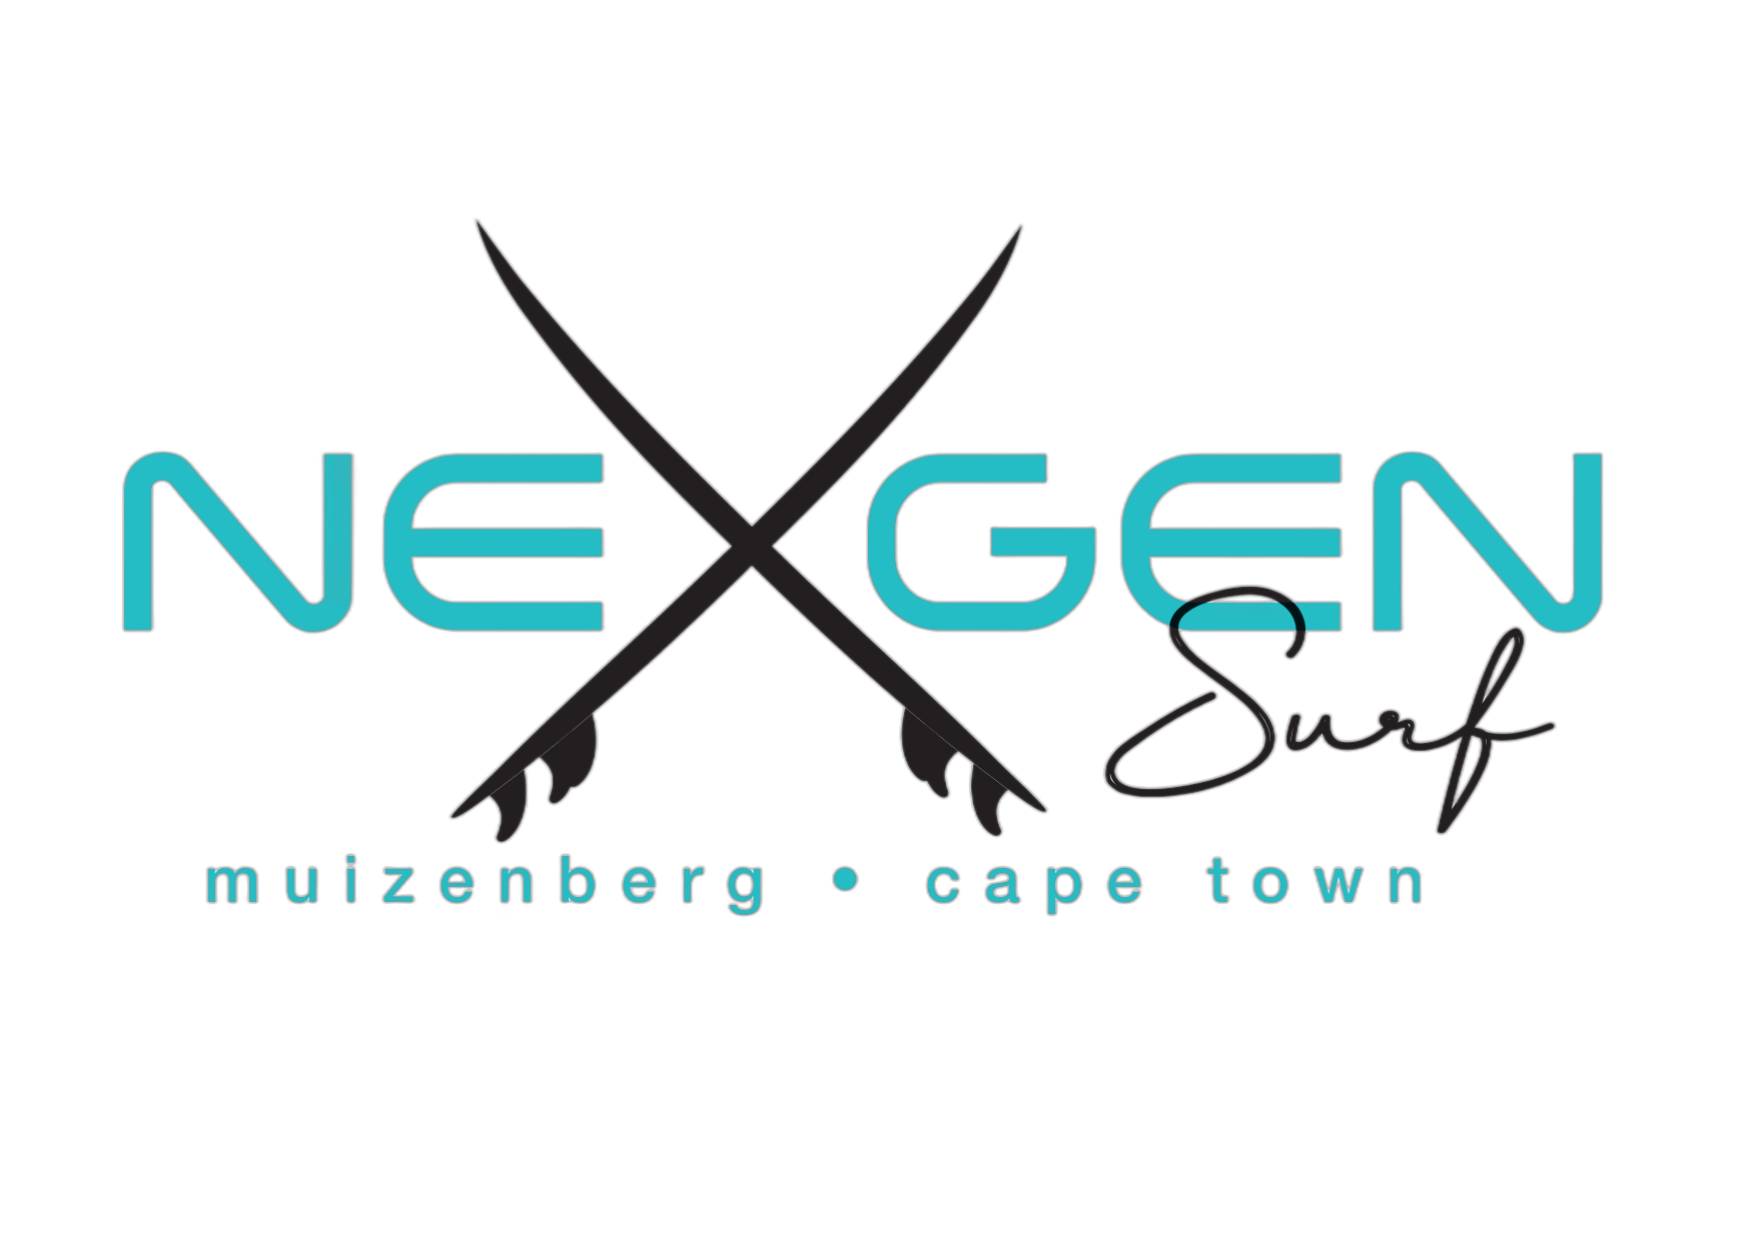 surfnexgen.co.za